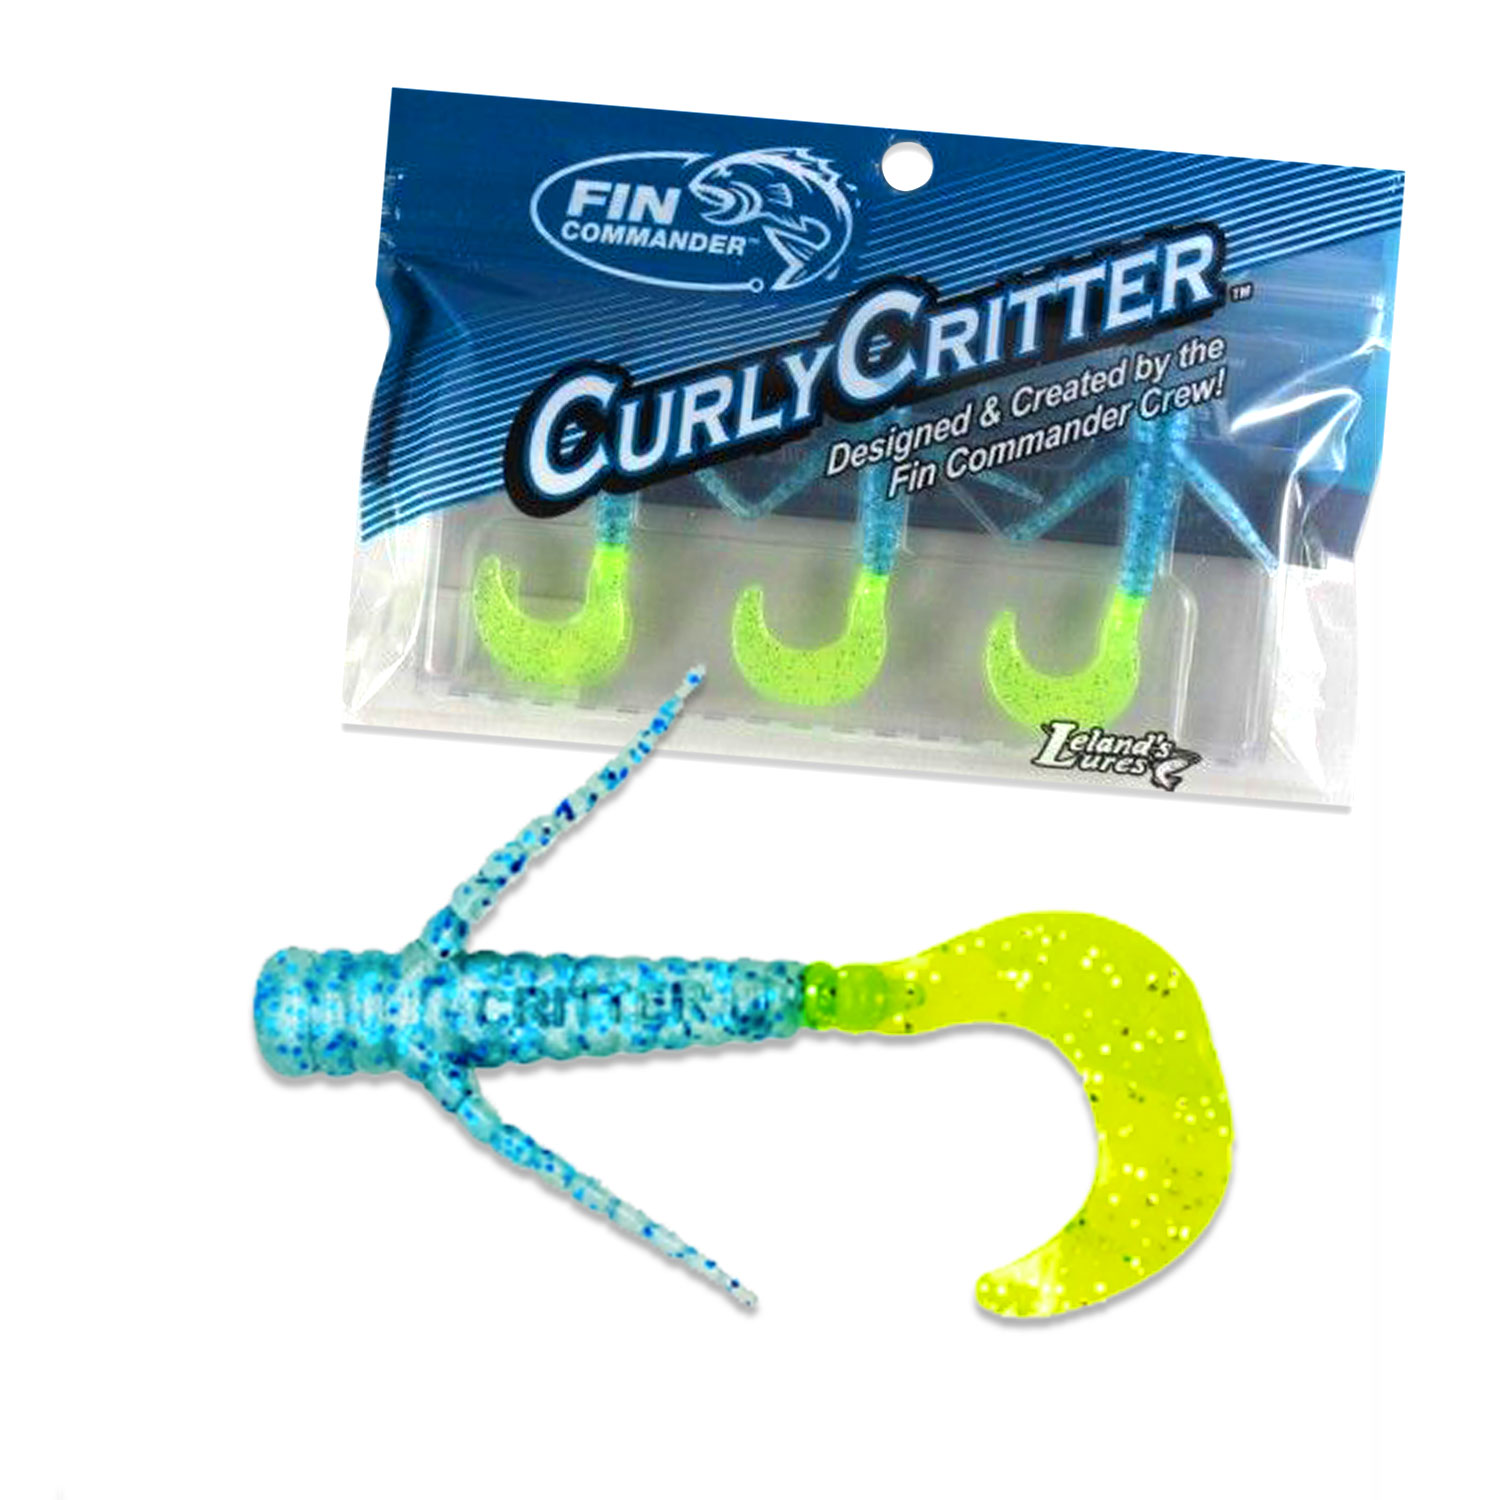 FC-CurlyCritter-Grp-NoTxt